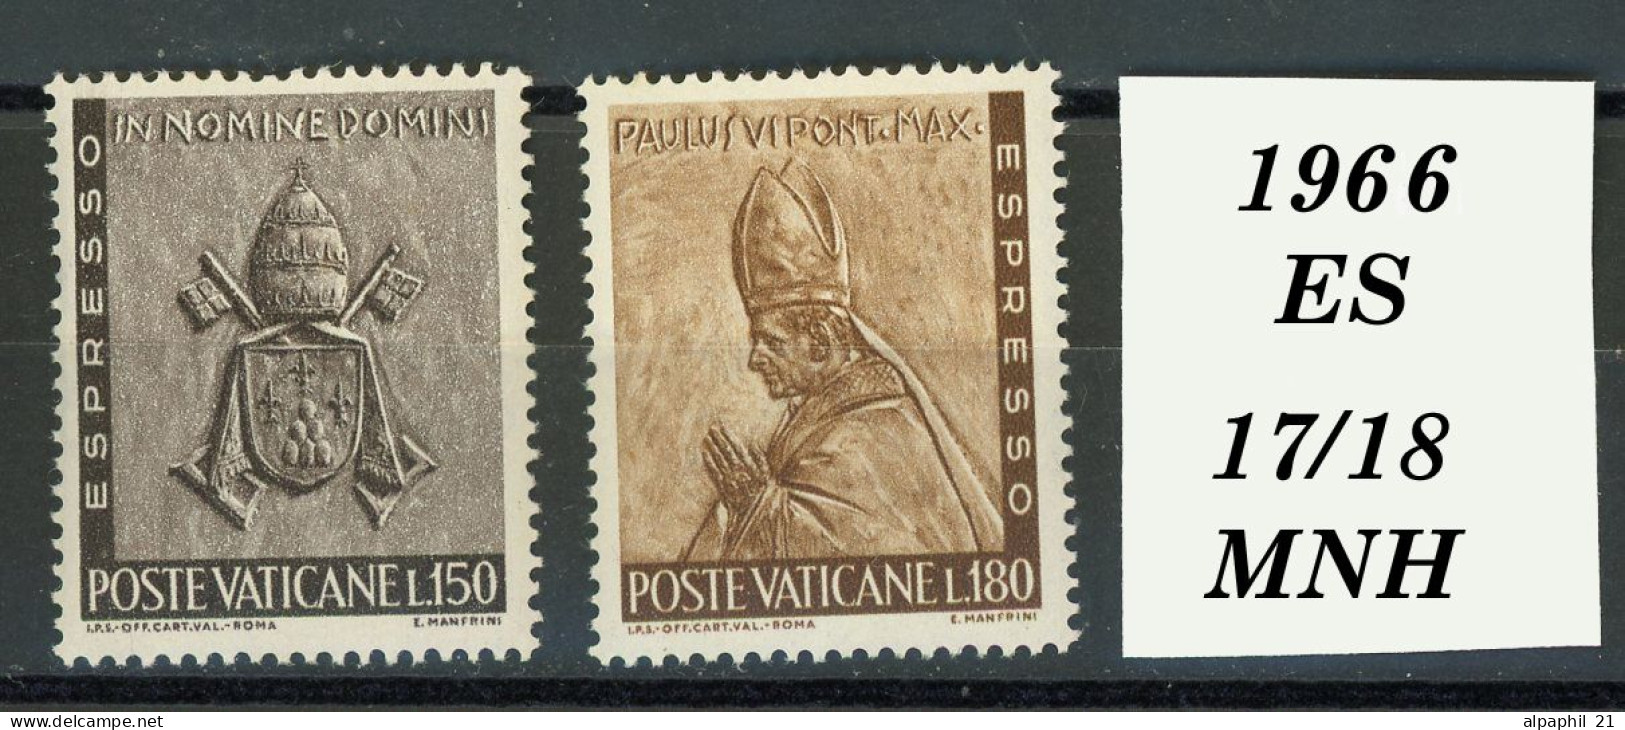 Città Del Vaticano: Paul VI, 1966 - Ongebruikt